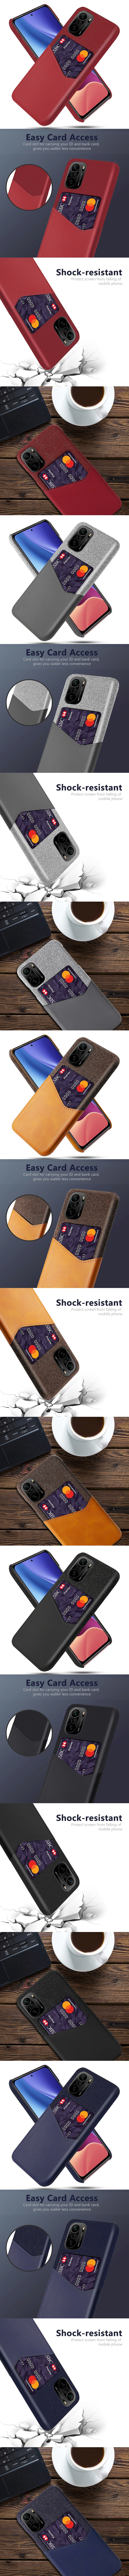 皮革保護殼(PLAIN) - 皮革混布紋單插卡背蓋撞色手機殼保護套手機套